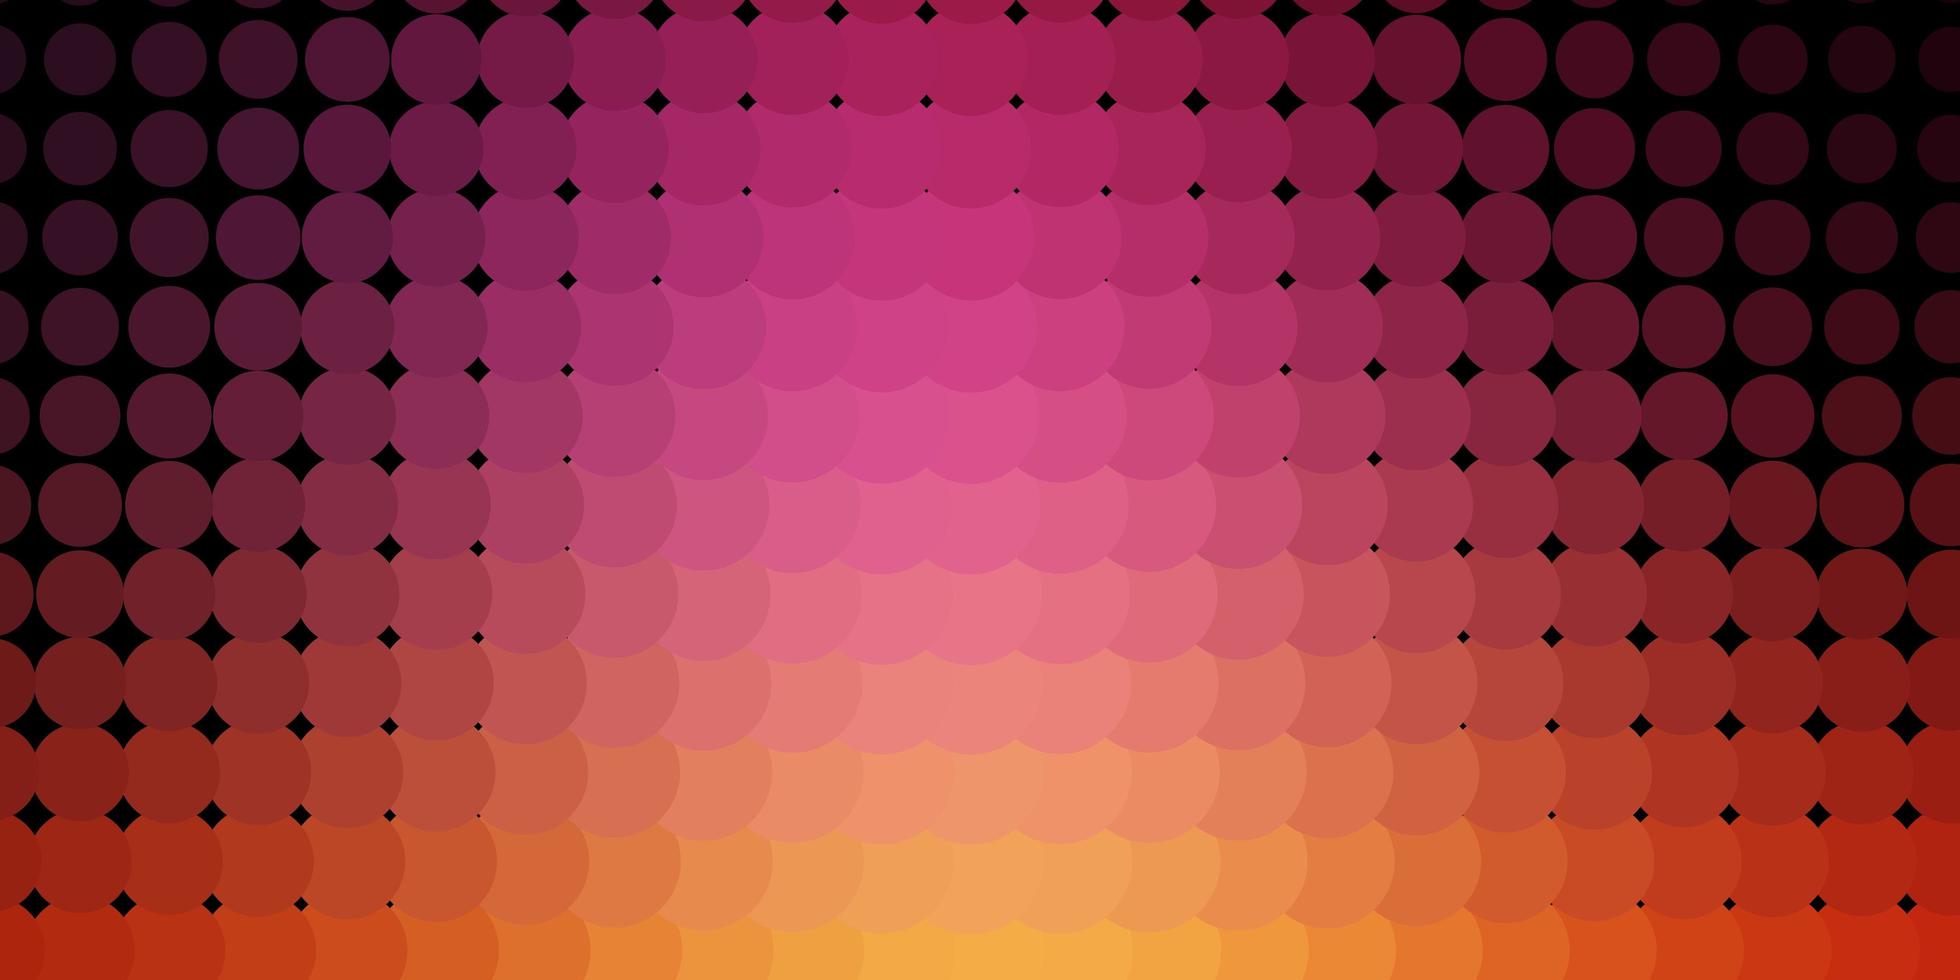 ljusrosa, gul vektorbakgrund med bubblor. vektor